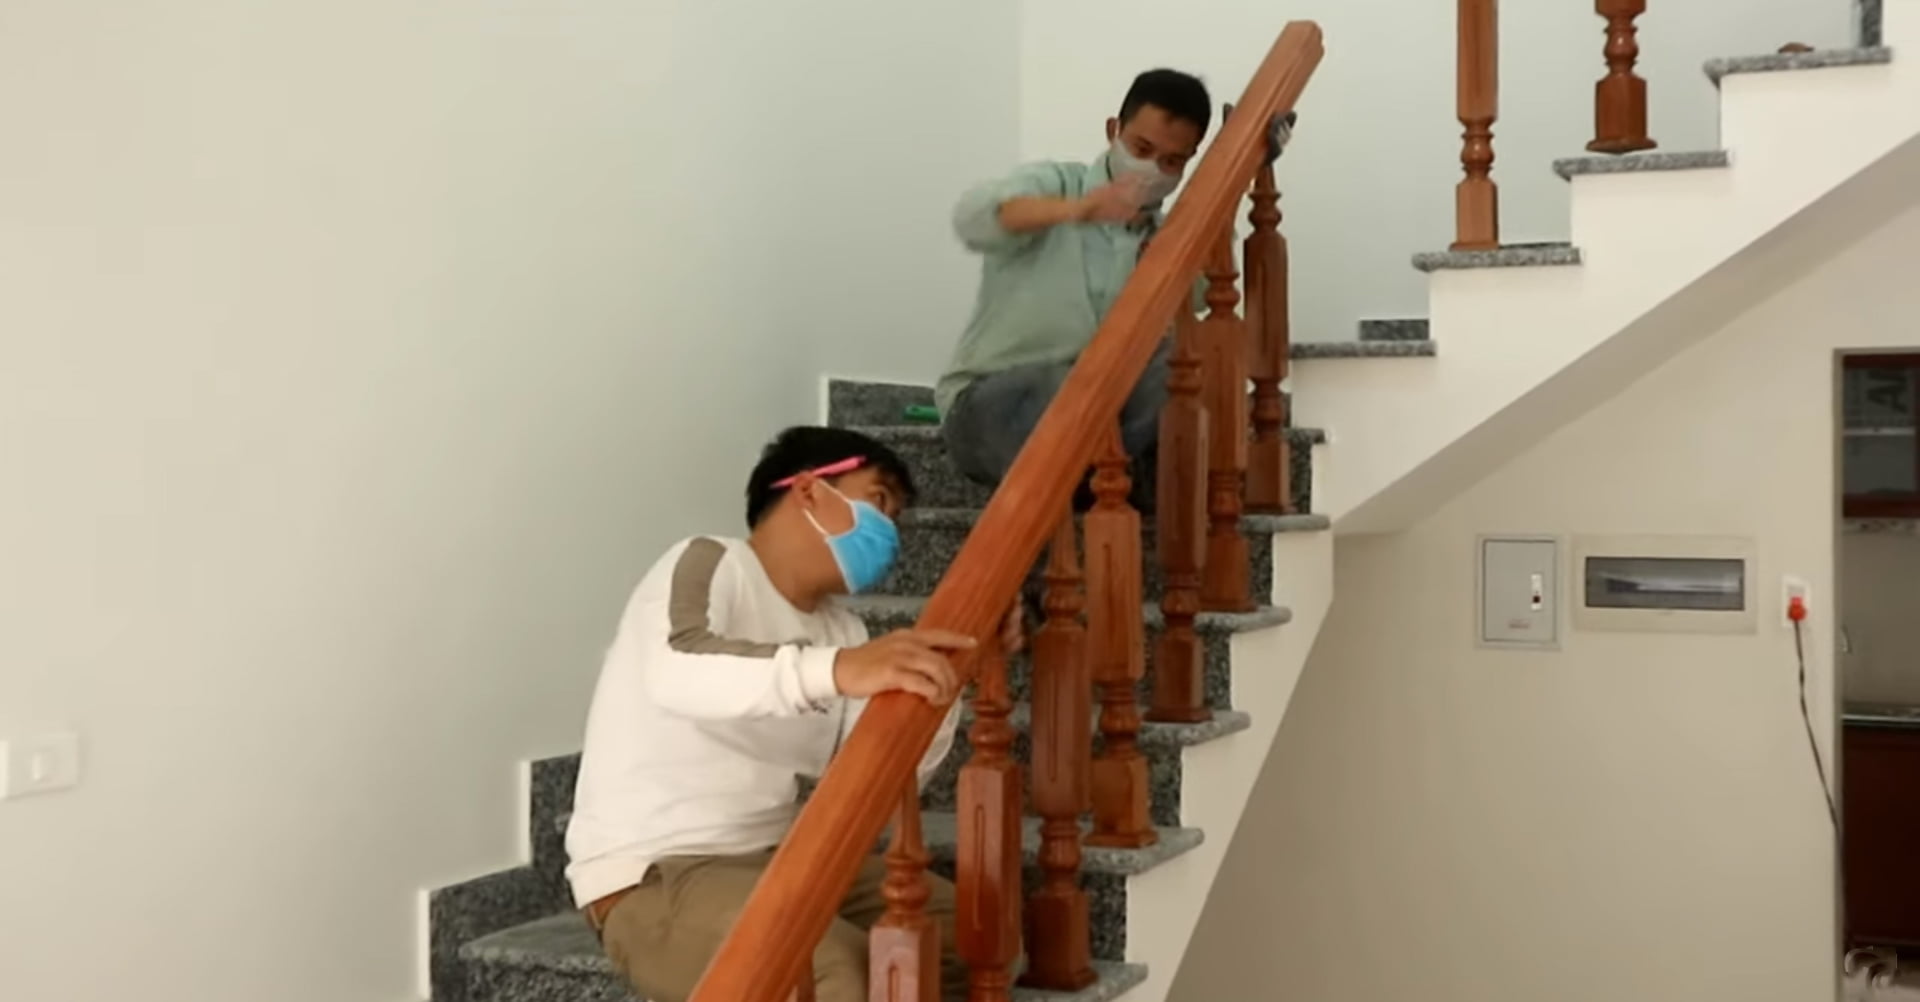 Sửa cầu thang không phải là công việc đơn giản và có thể gây nguy hiểm. Hãy để thợ sửa cầu thang chuyên nghiệp lo lắng cho bạn. Họ sẽ giúp bạn xử lý mọi vấn đề và đưa cầu thang của bạn trở nên hoàn hảo. Hãy xem hình ảnh để yên tâm về chất lượng đảm bảo.